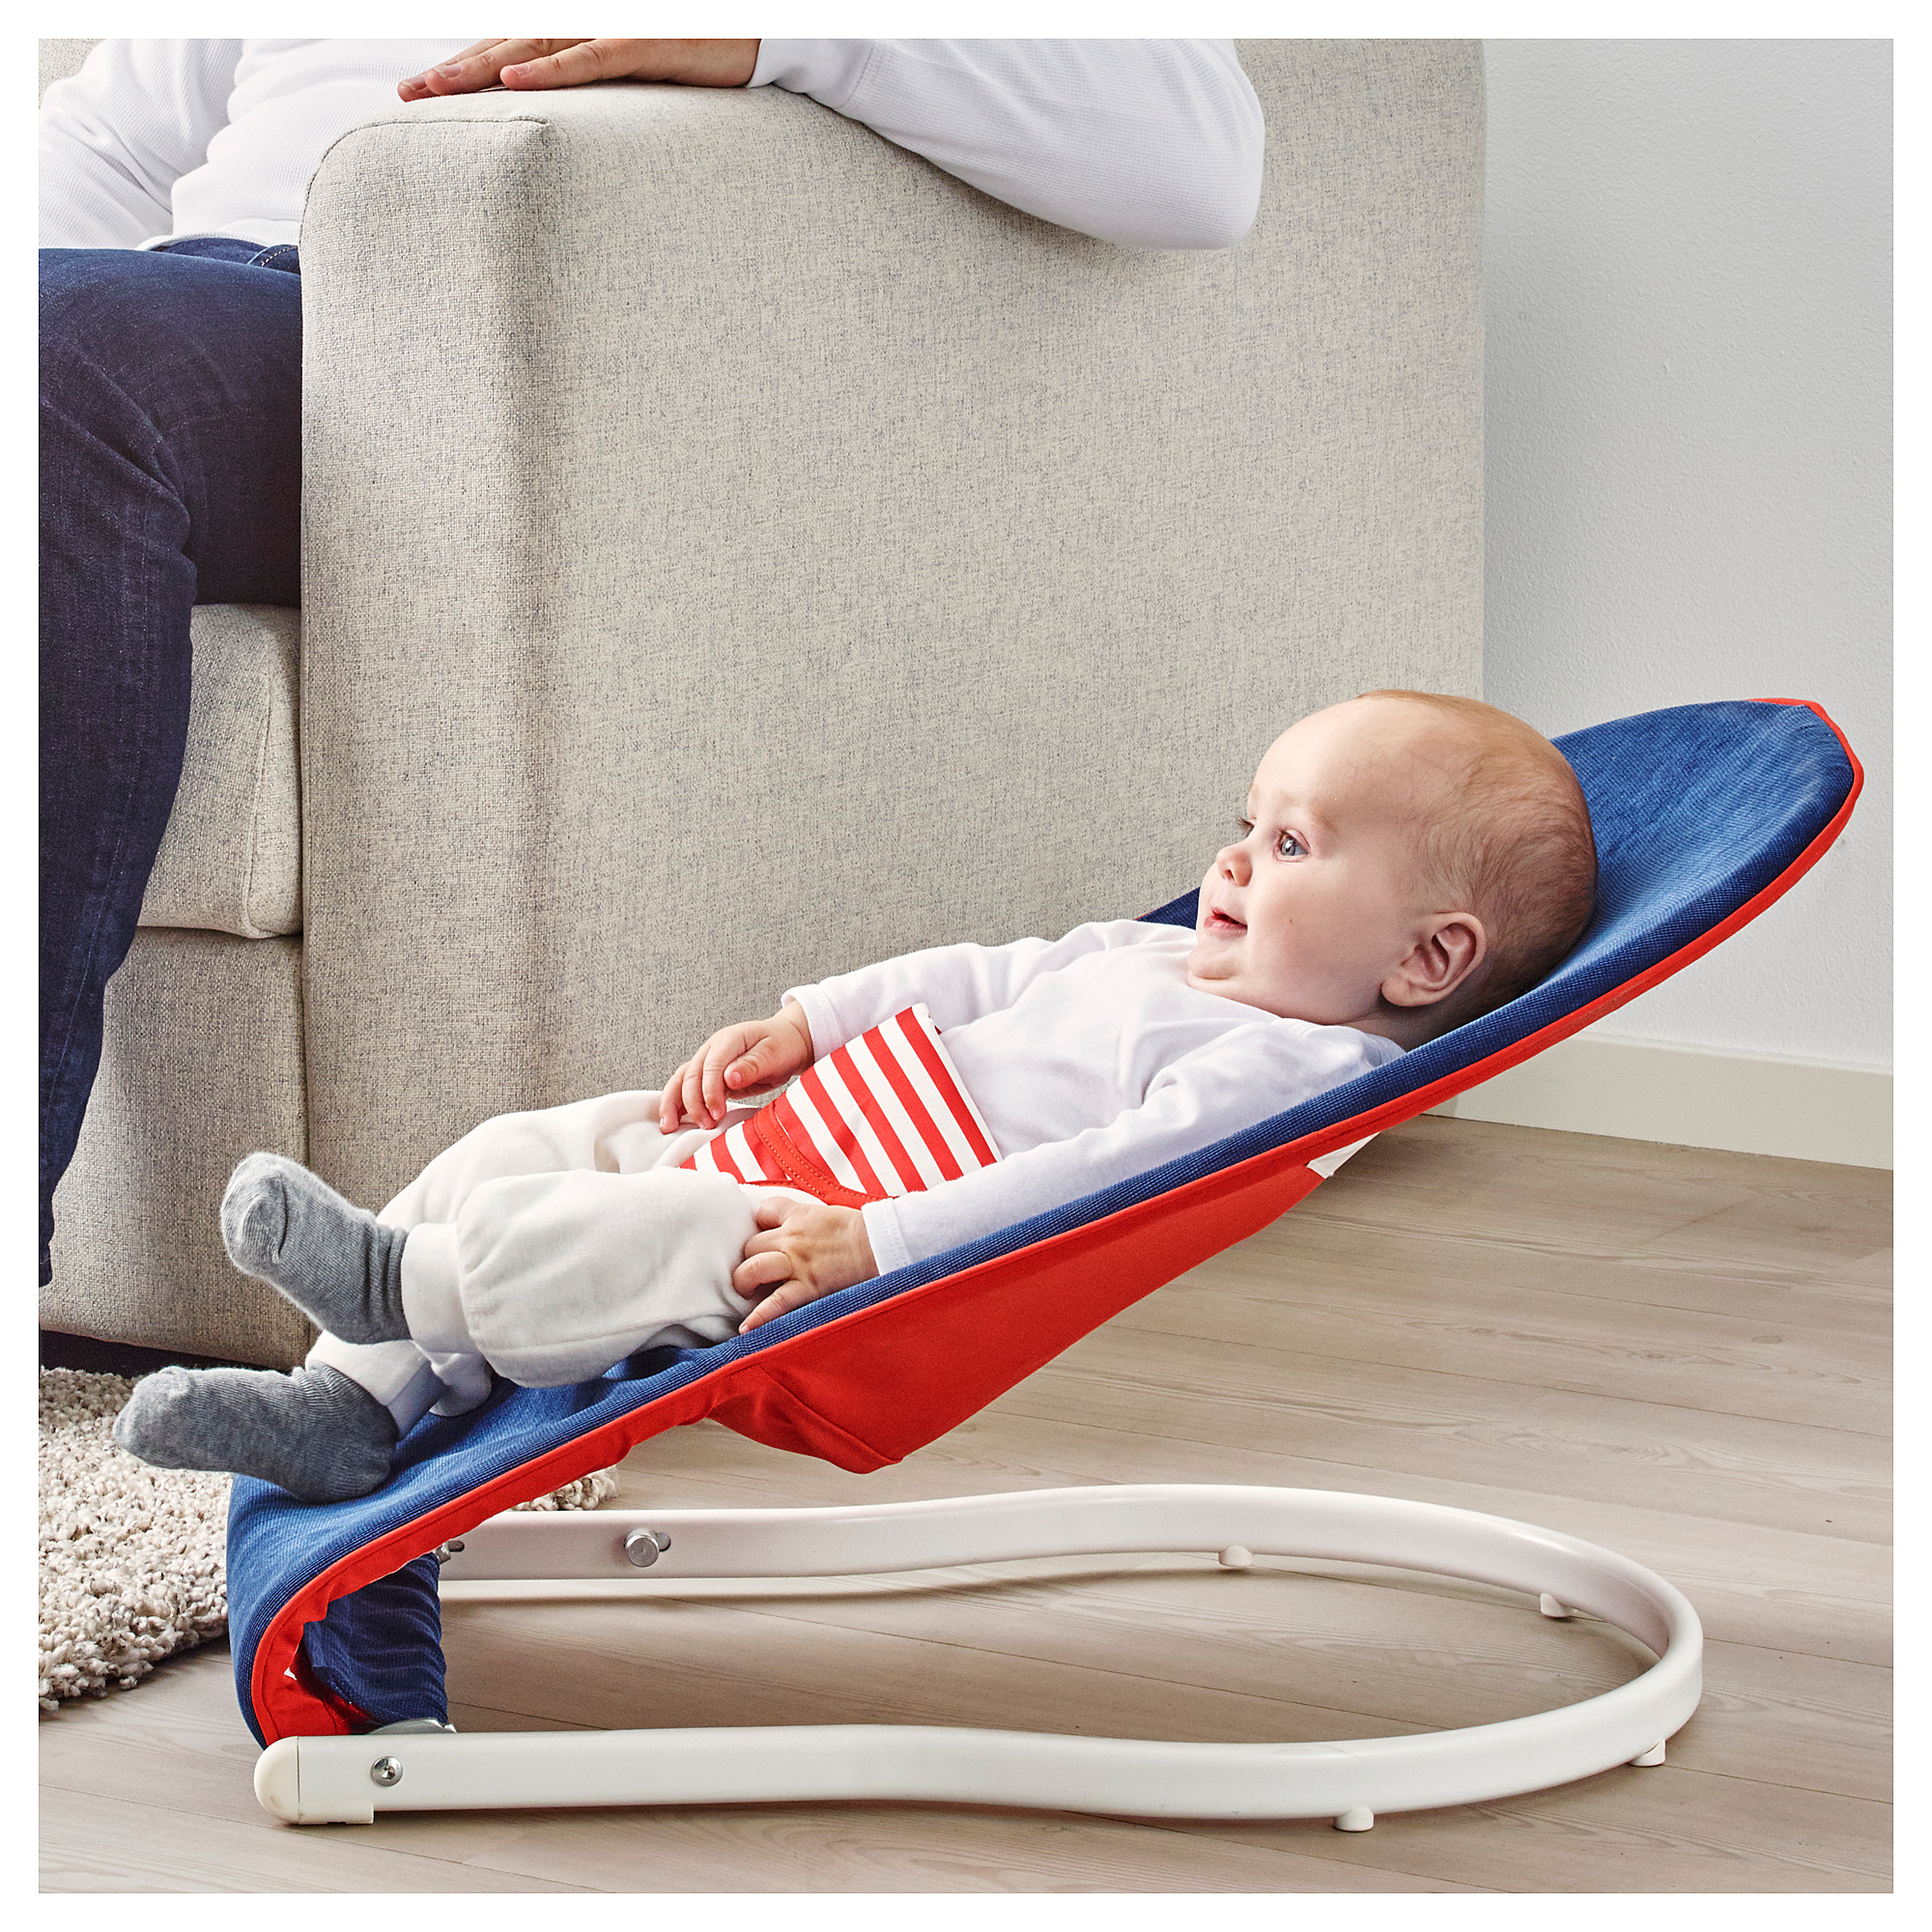 Купить Переносное кресло для младенца ТОВИГ, синий, красный в IKEA (Минск). Стоимость, фото и отзывы. Официальный сайт онлайн